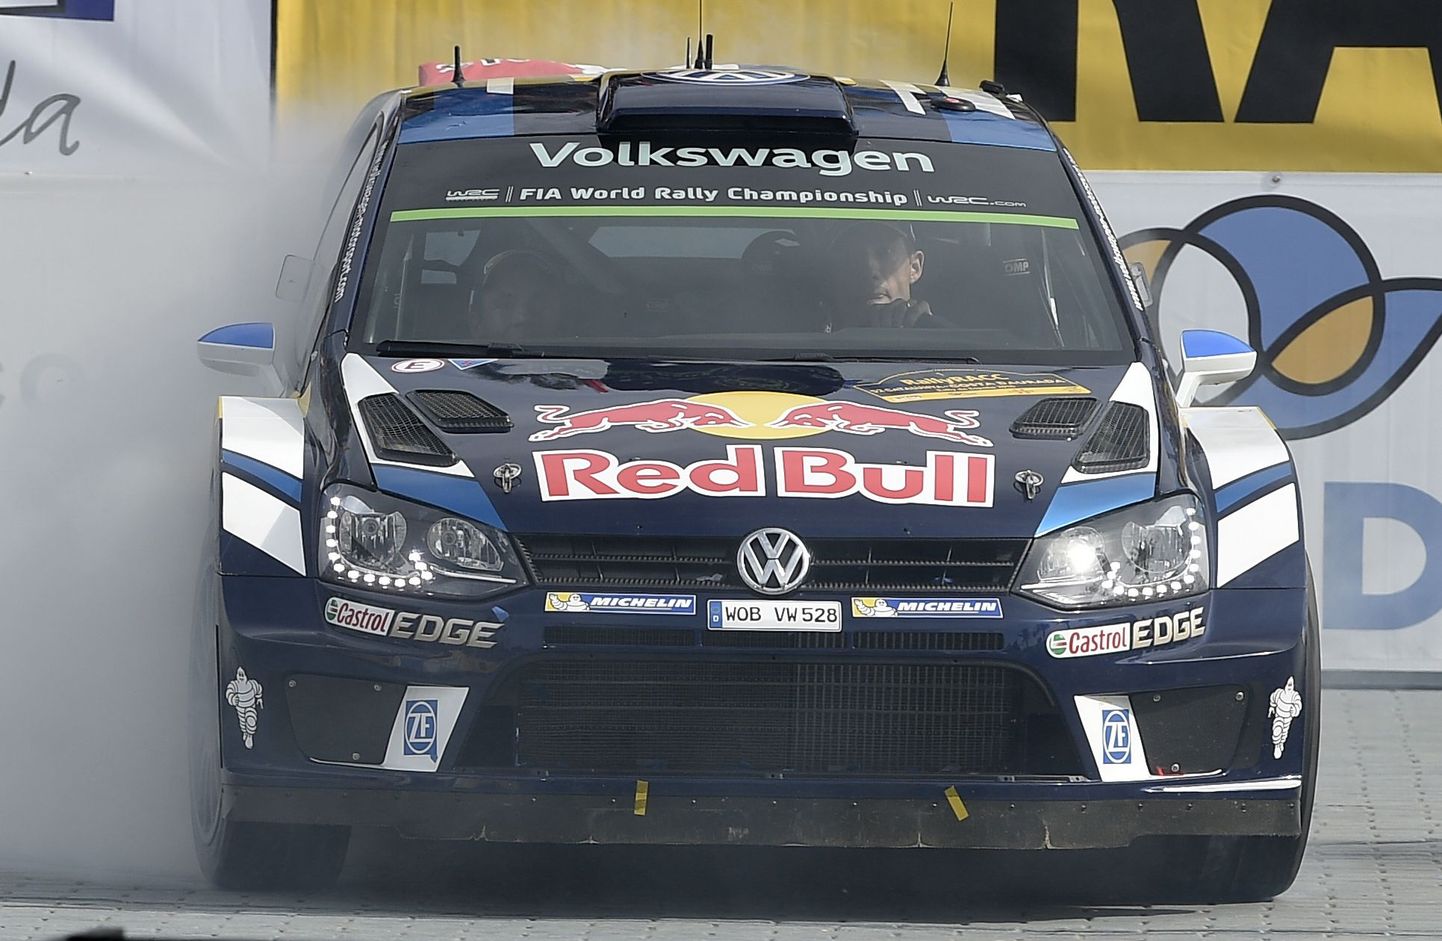 Red Bulli logo on WRC-sarjas ilutsenud viimastel aastatel Volkswageni masinatel. Millisel kujul näeb Red Bulli rallimaailmas tuleval aastal?